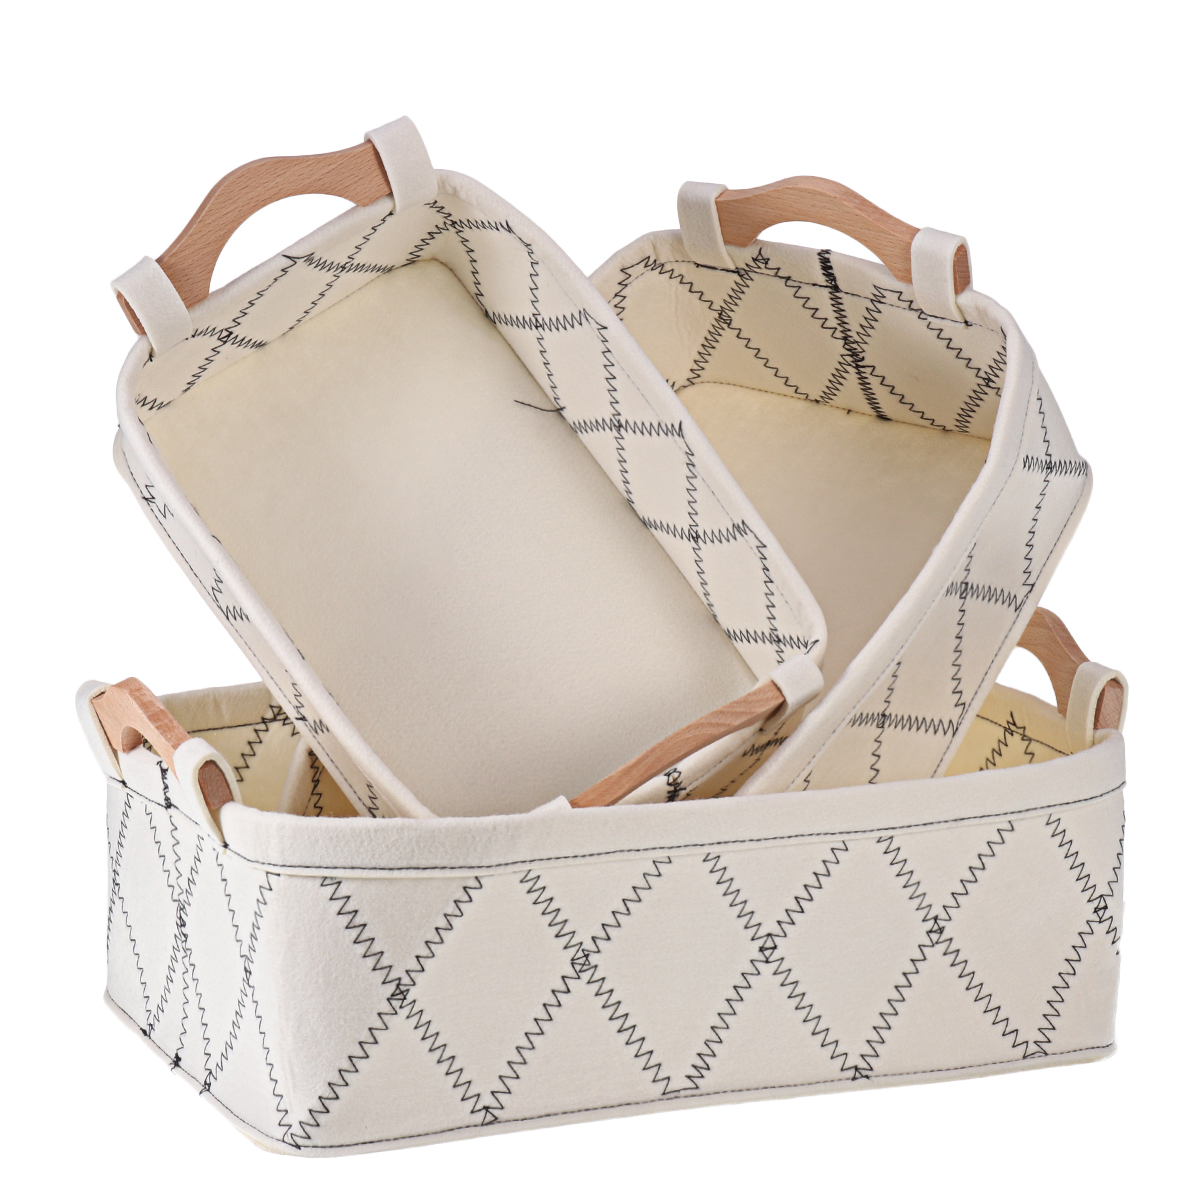 Wooden-Handle-Felt-Receiving-Basket-Simple-Sorting-Storage-Bags-Cosmetic-Fabric-Storage-Basket-Deskt-1744878-14